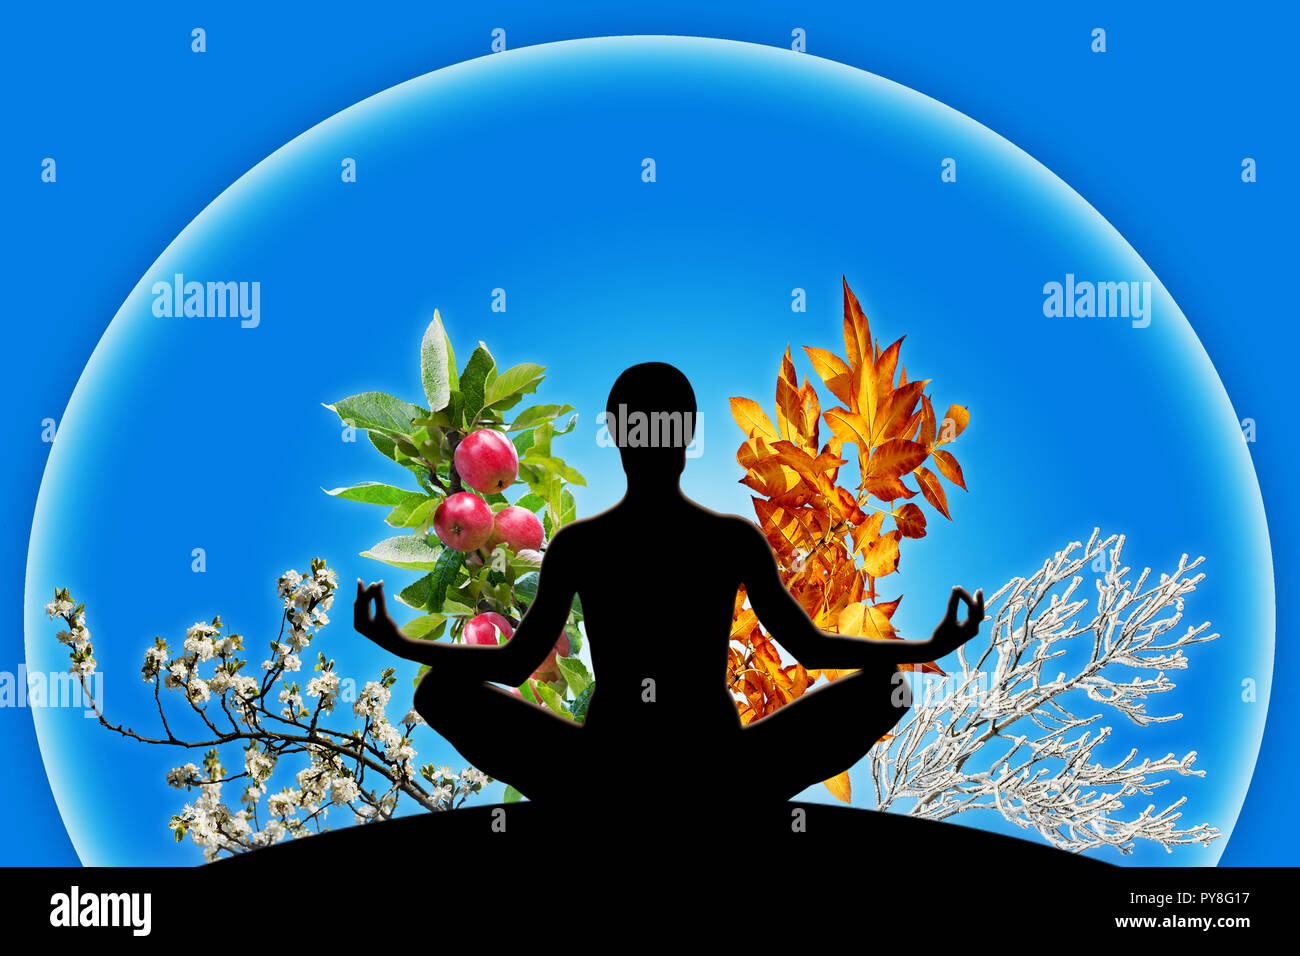 Yoga féminin figure dans une sphère avec 4 différentes branches, représentant les 4 saisons de l'année (printemps, été, automne, hiver). Notion de temps qui passe Banque D'Images